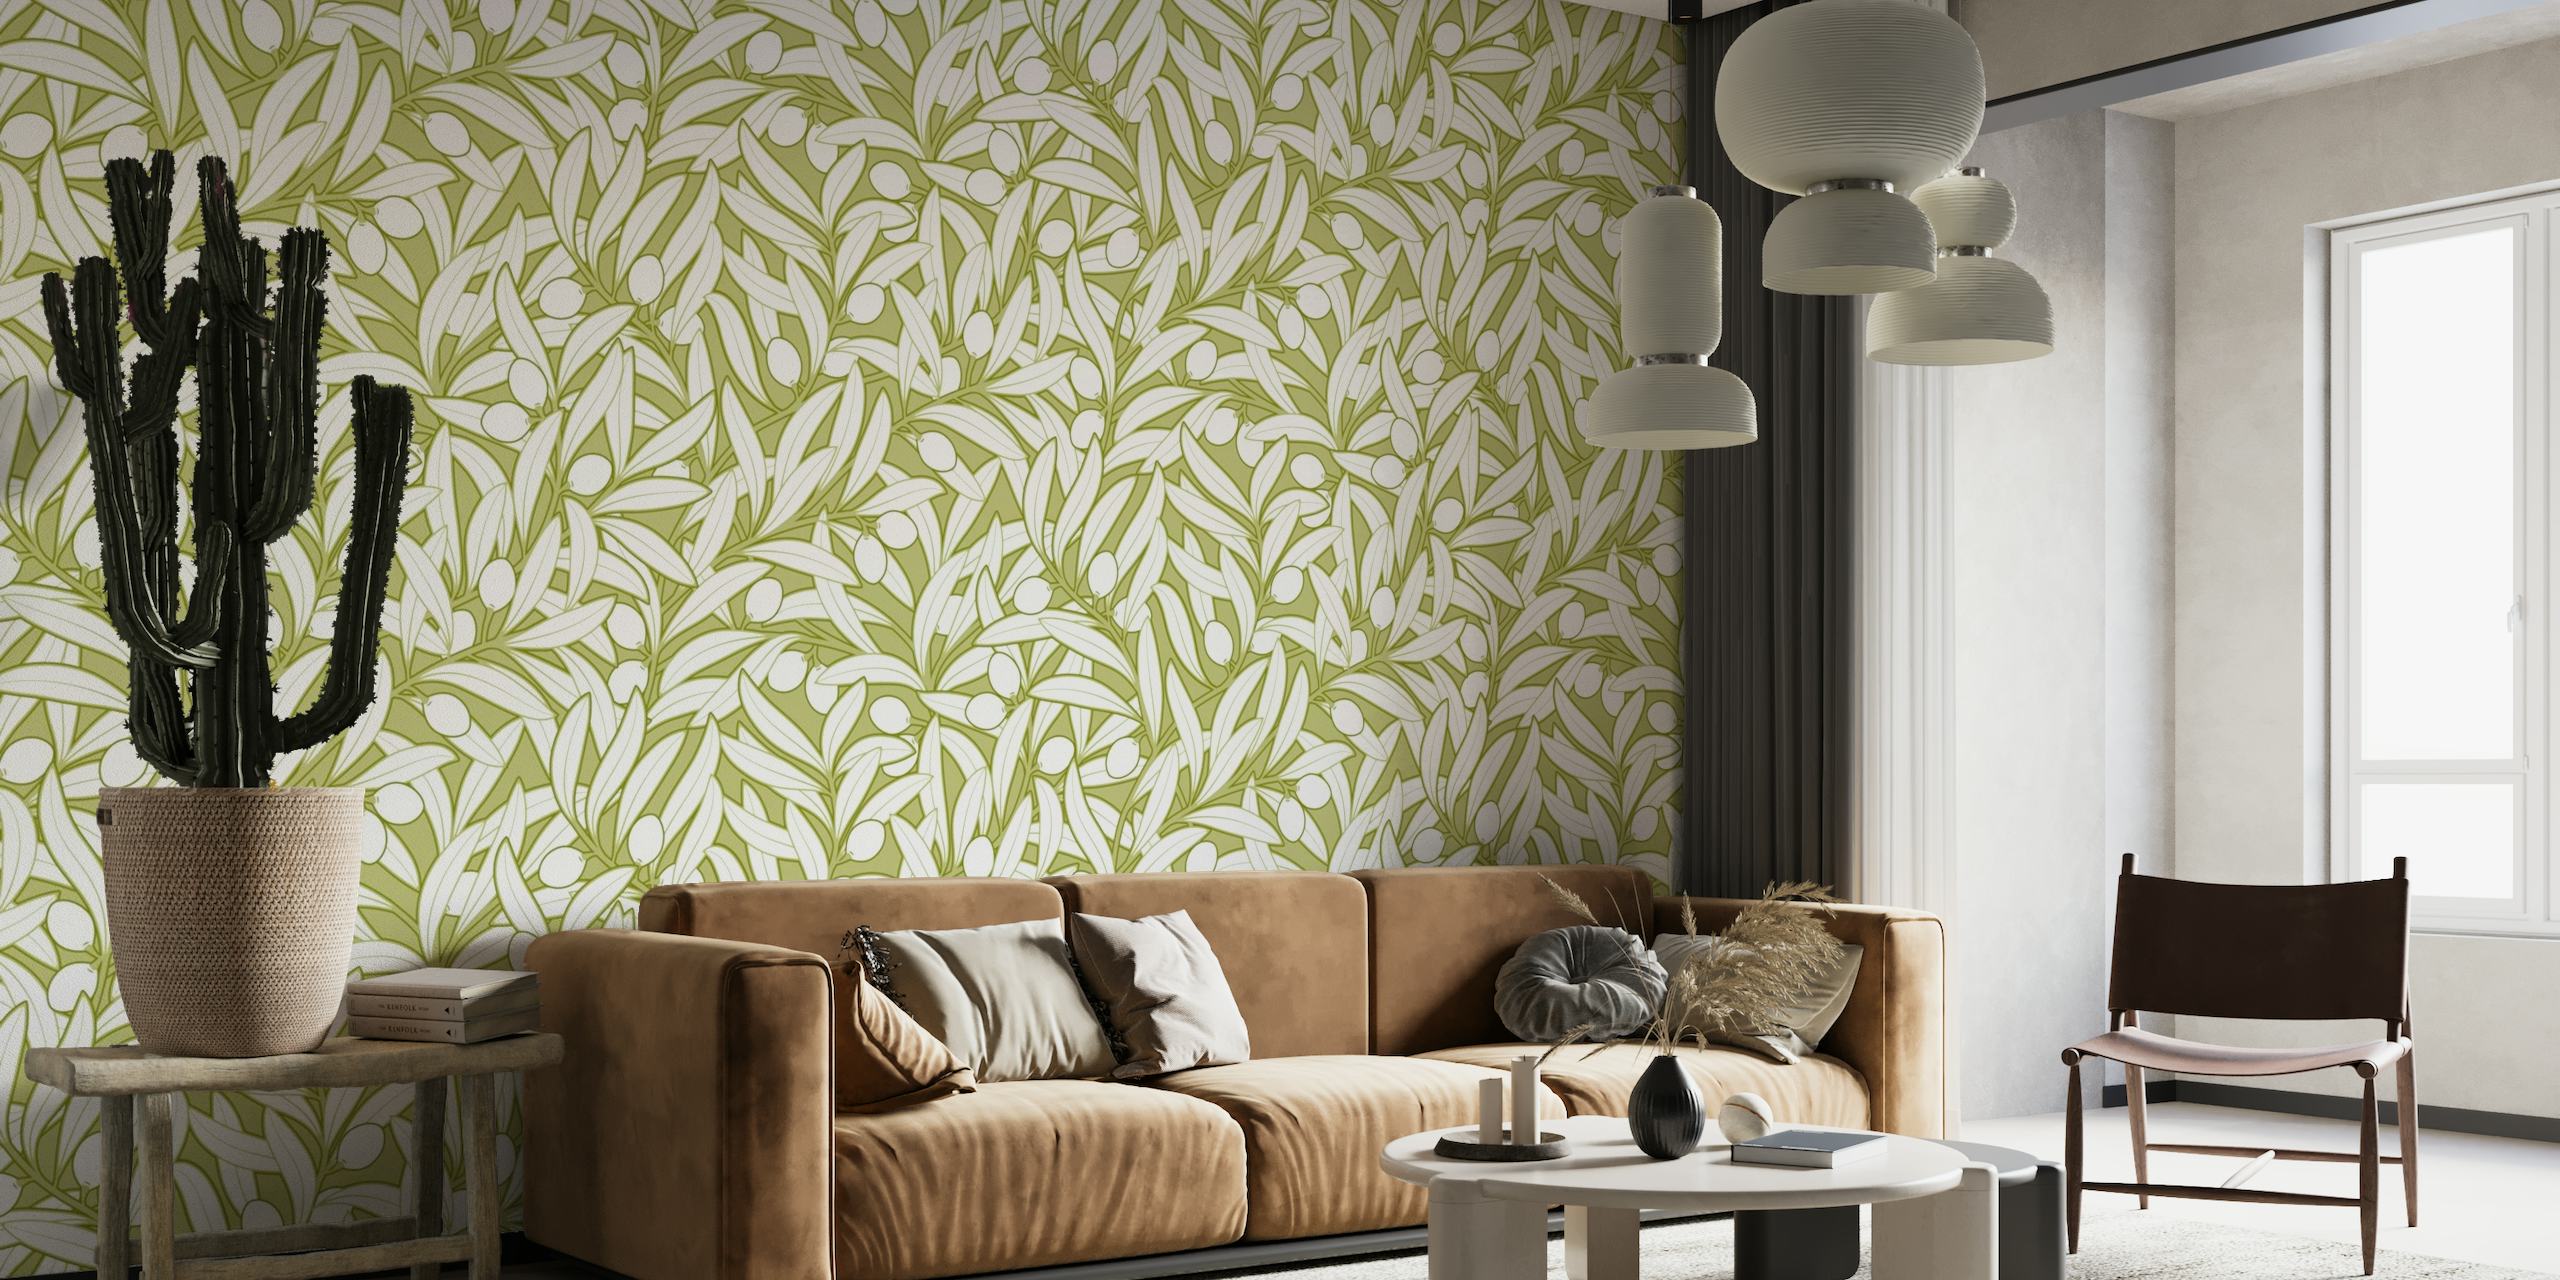 Mural de parede neutro em cor oliva com padrão de ramos de oliveira